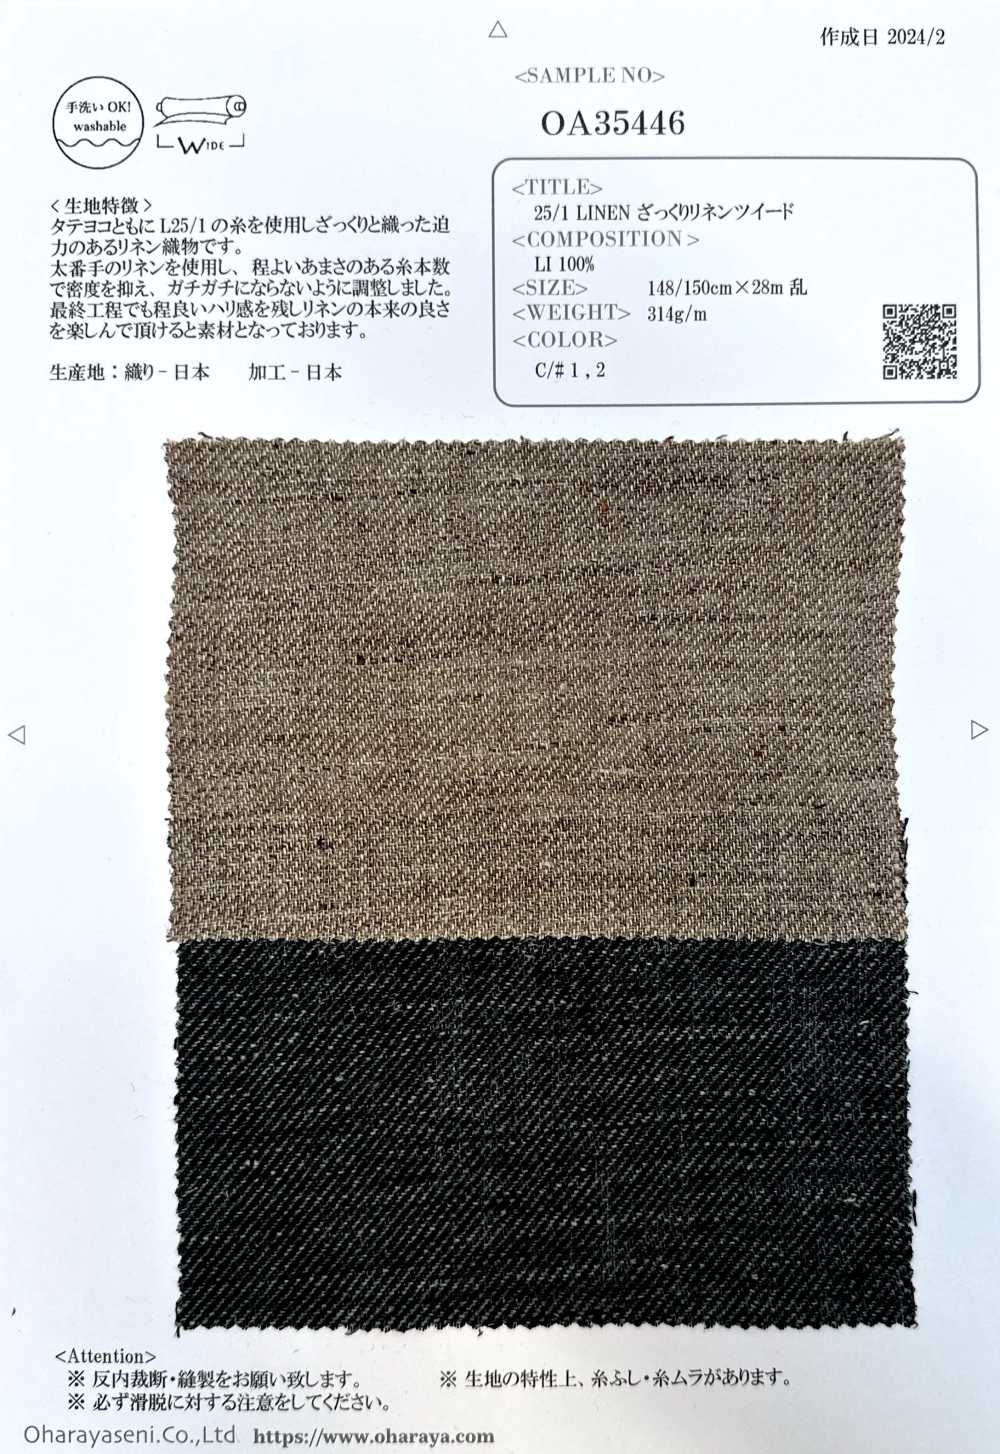 OA35446 LINHO 25/1 Tweed Aproximadamente Linho[Têxtil / Tecido] Oharayaseni